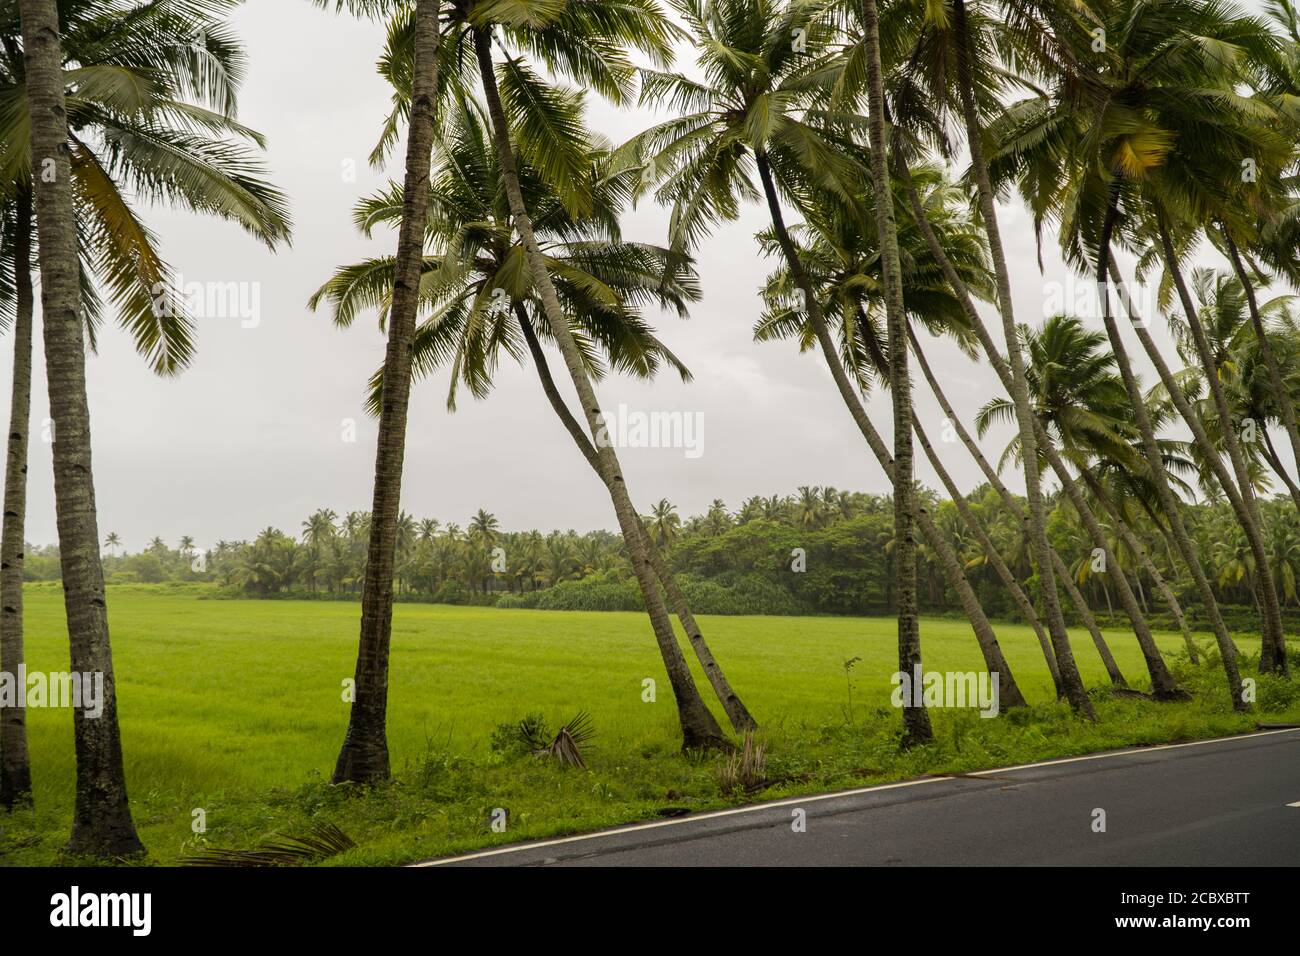 Une belle étendue de palmiers droits et inclinés le long d'une route de village à Goa, Inde - capturé pendant les moussons avec le ciel gris et la végétation luxuriante Banque D'Images